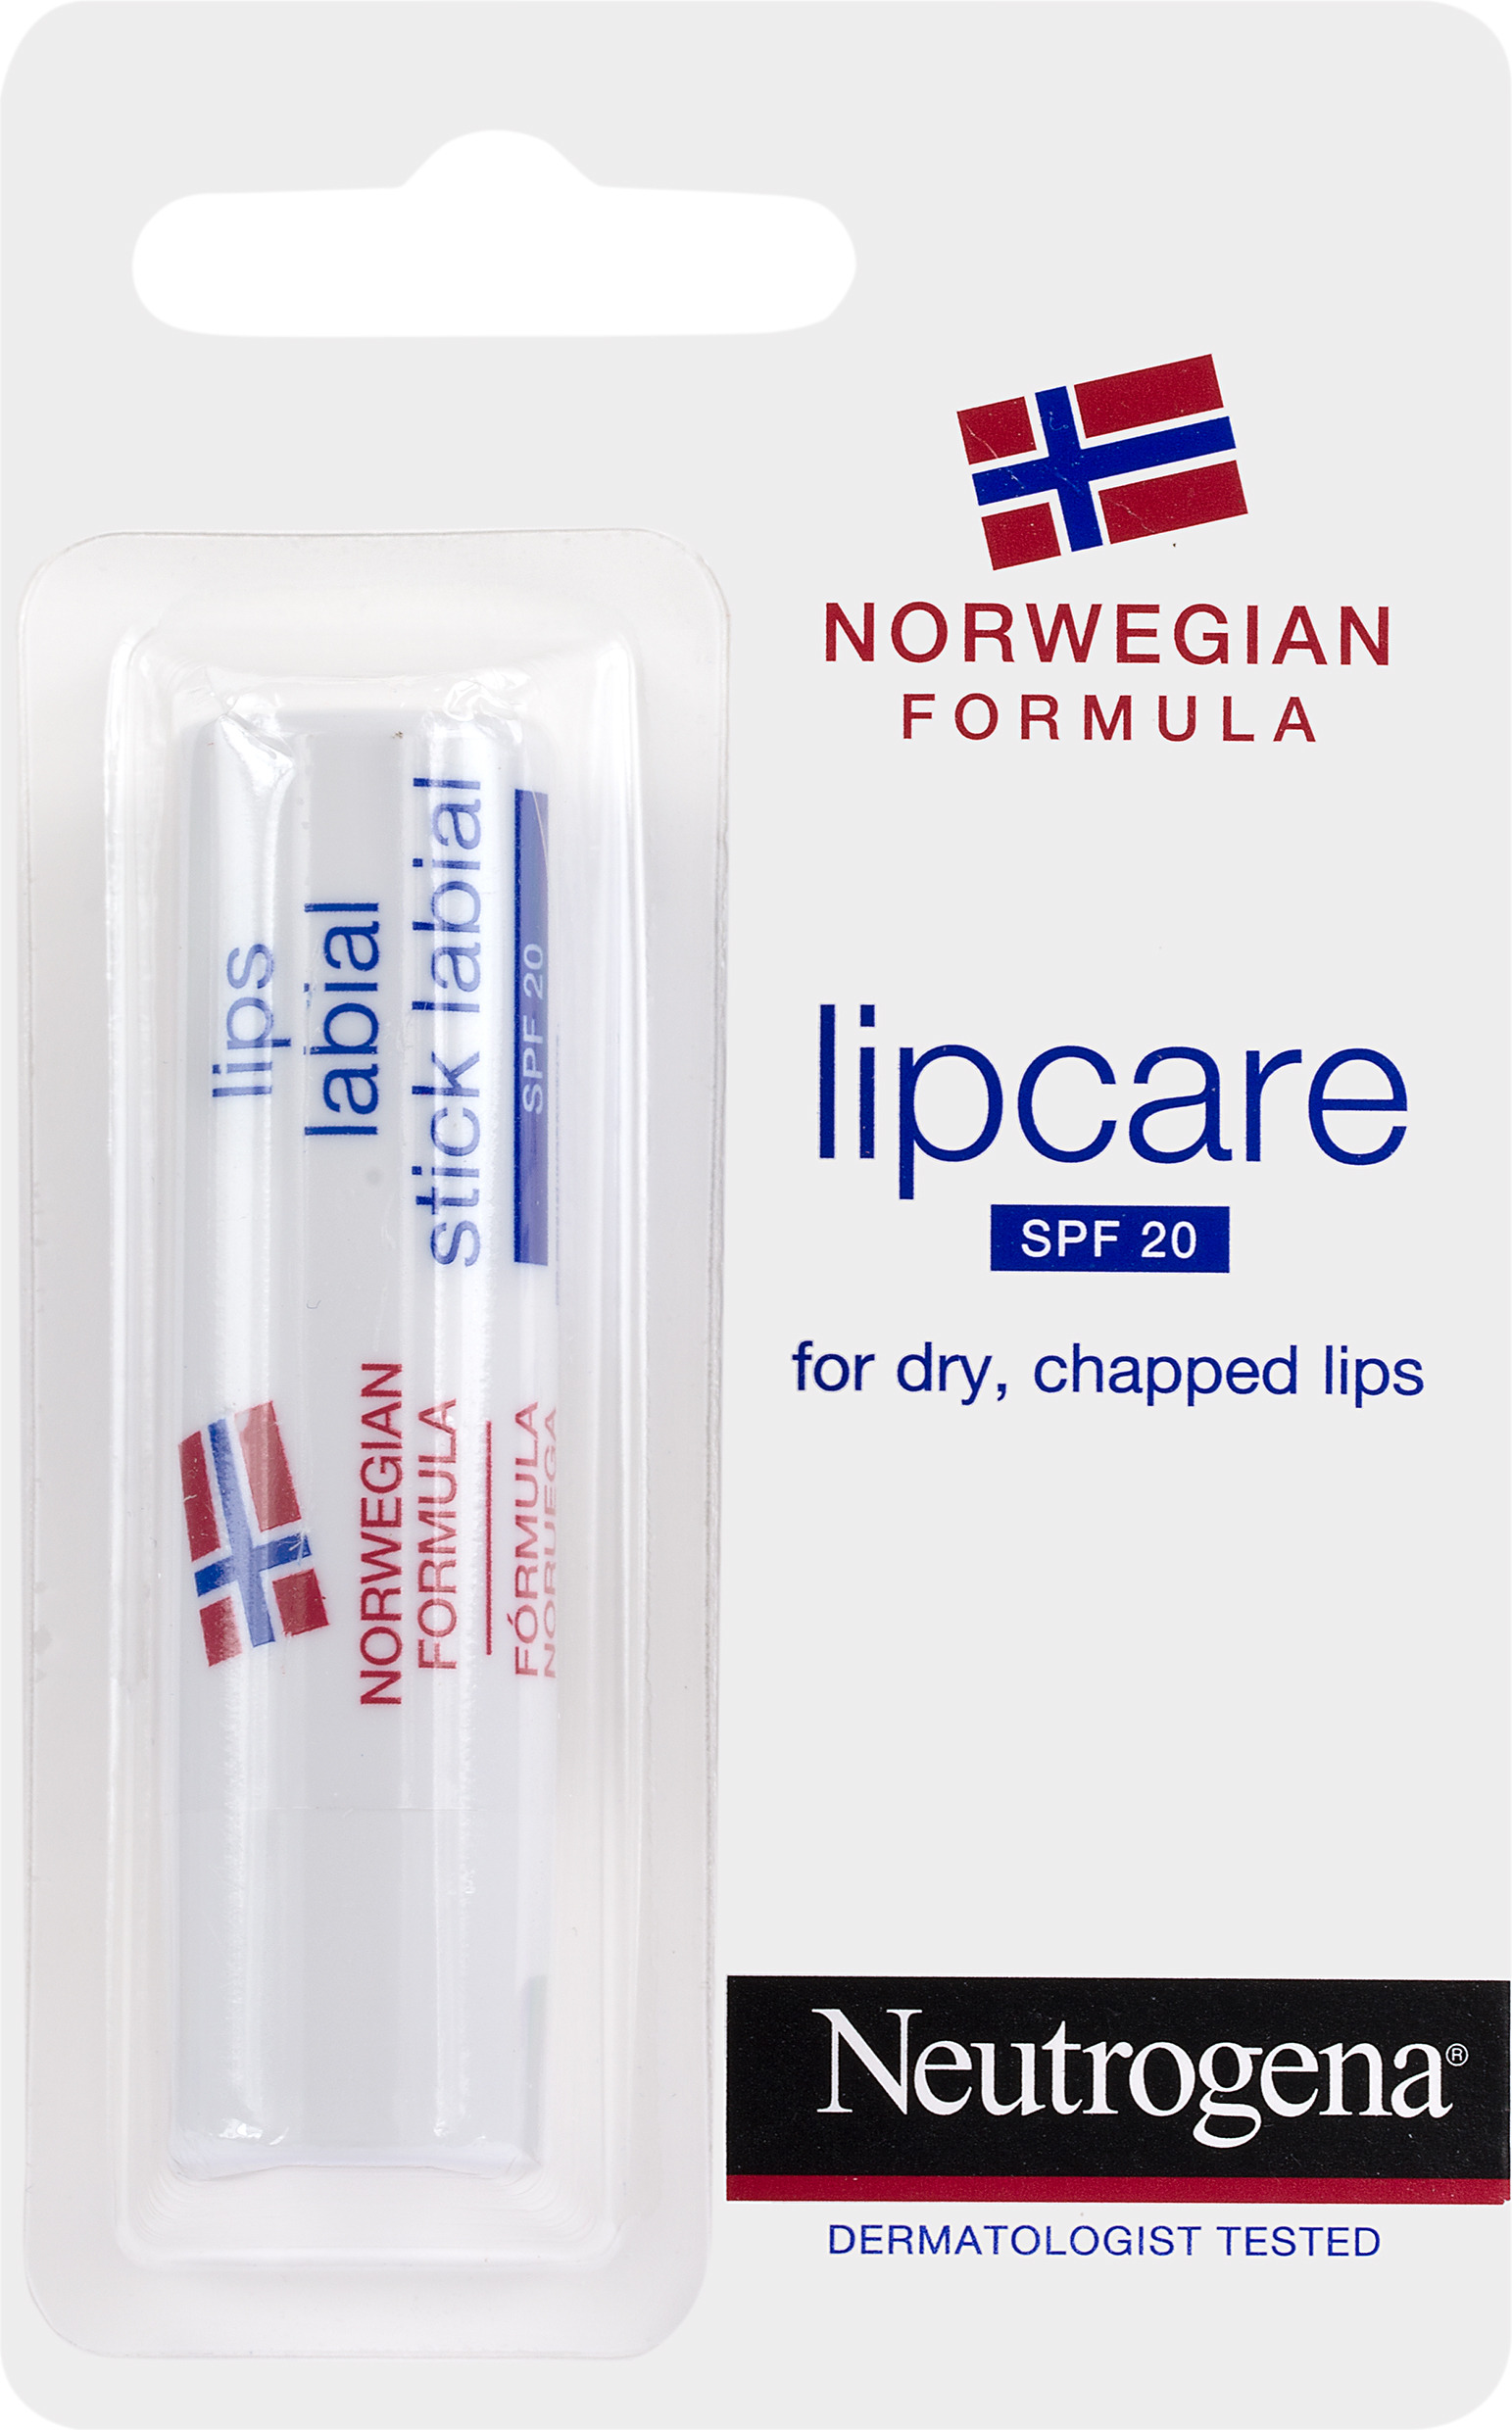 Neutrogena Lipcare spf 20